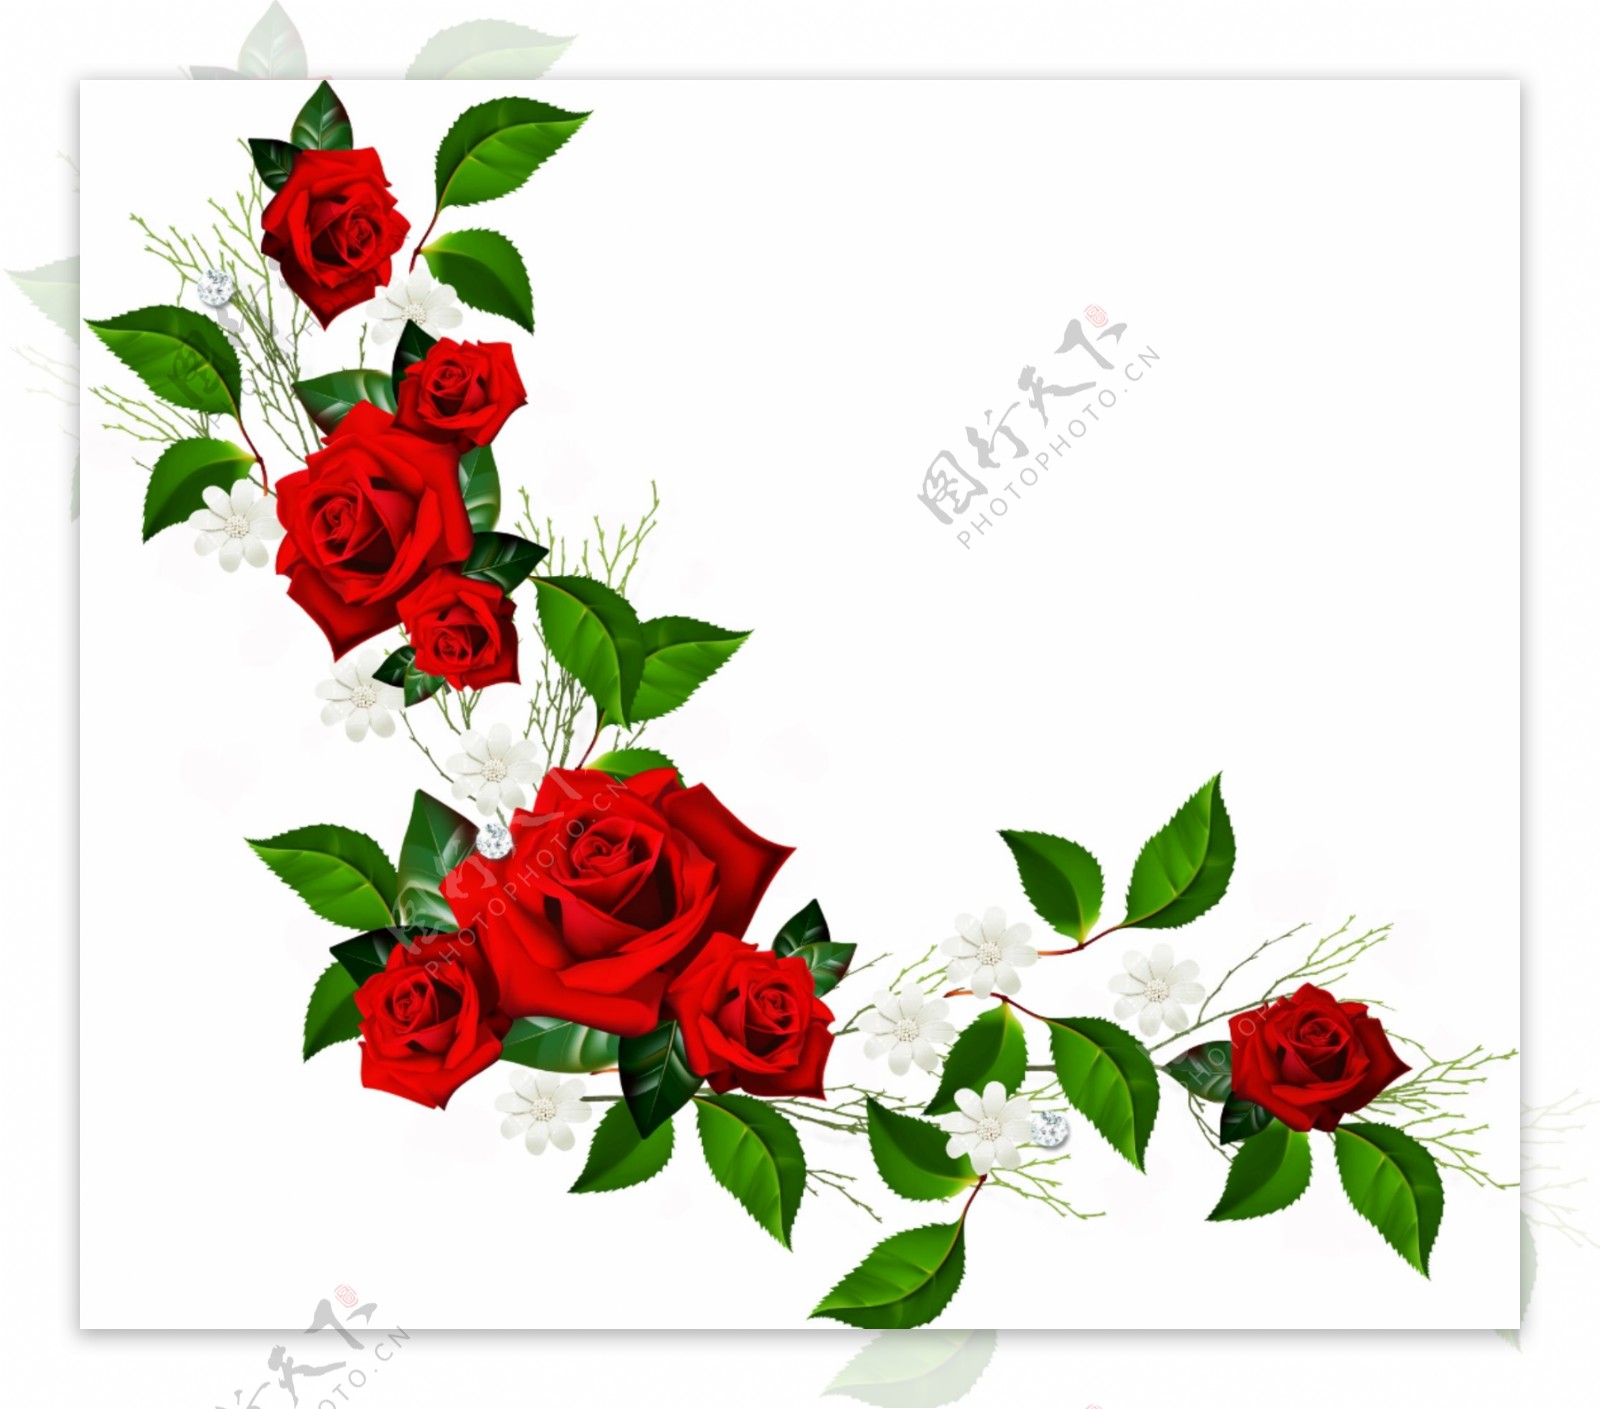 鲜红色玫瑰花卉边框免抠psd透明素材